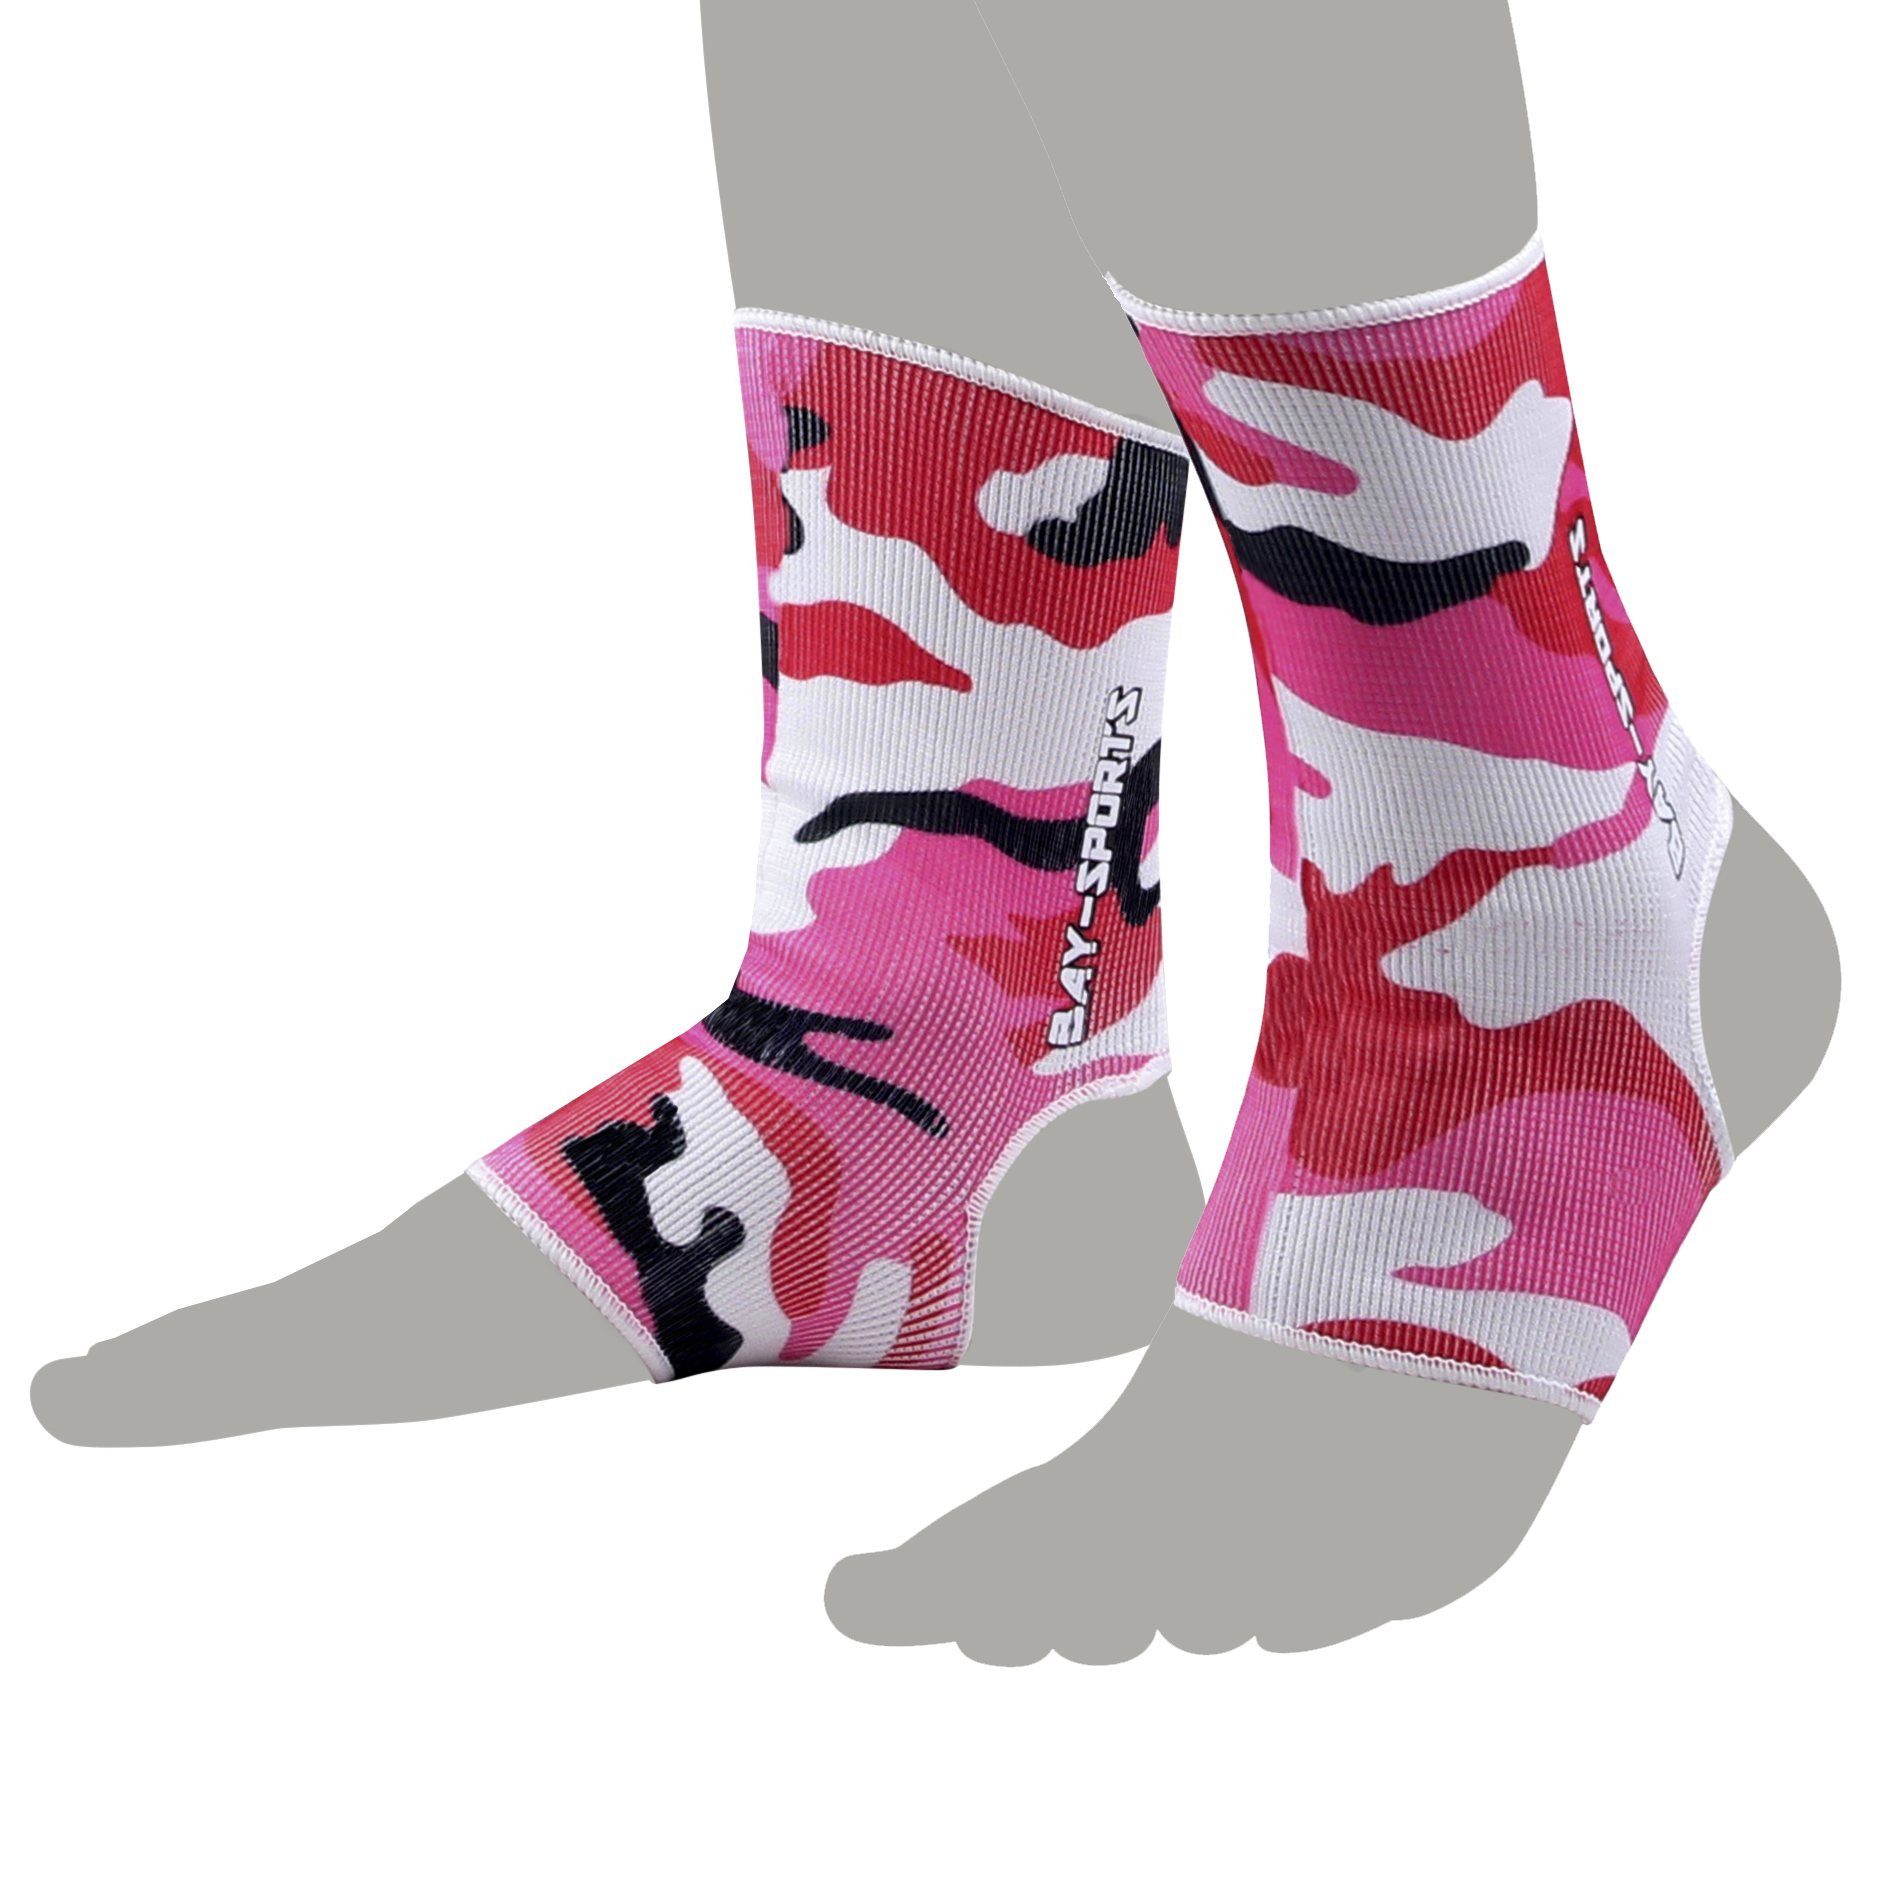 BAY-Sports Fußbandage Knöchelbandage Fußgelenkbandage Sprunggelenk Paar, Anatomische Passform, Kompression, XS - XL, kann rechts und links getragen werden